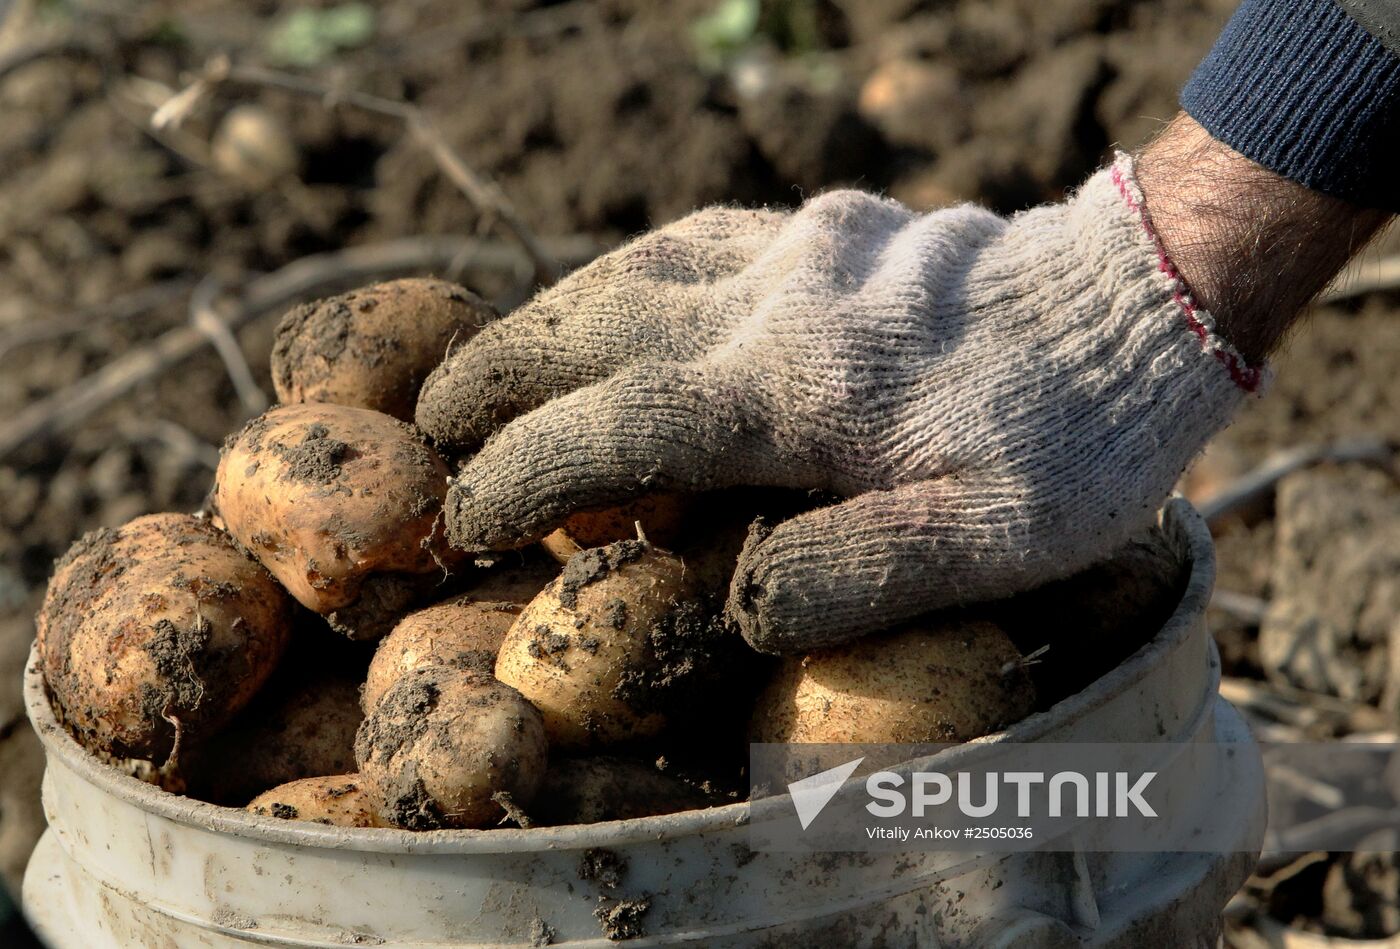 Harvesting vegetables at private farm in Primorye Region